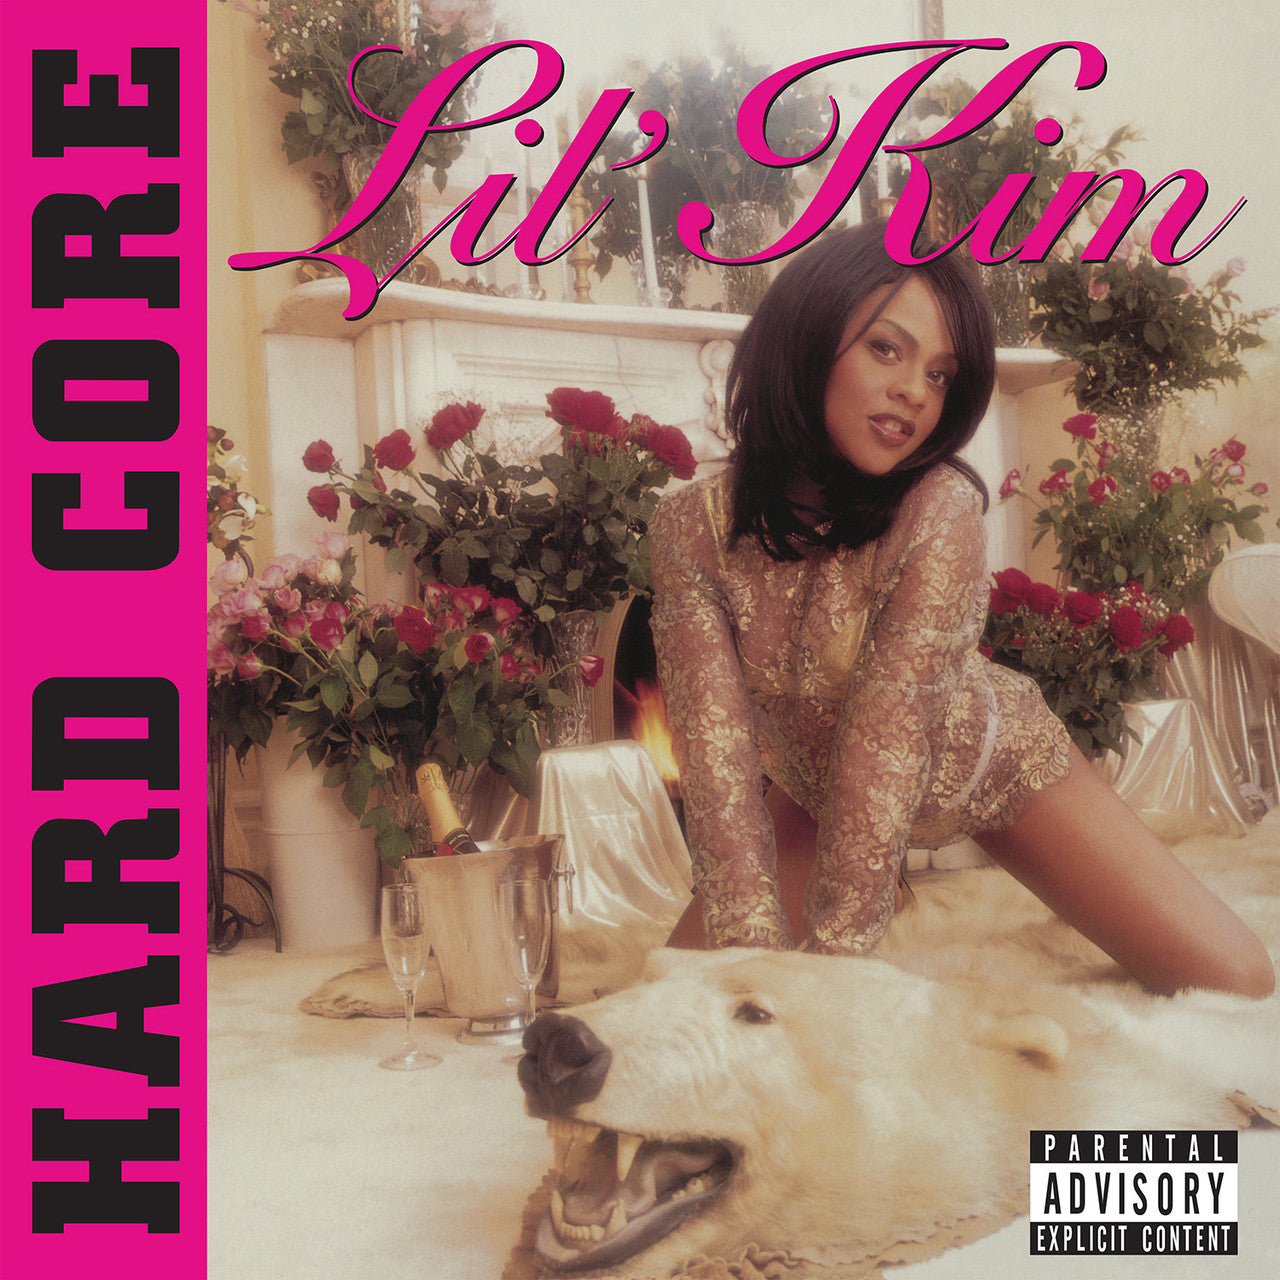 LIL' KIM - HARD CORE - GOLD COLOR - 2-LP - VINYL LP